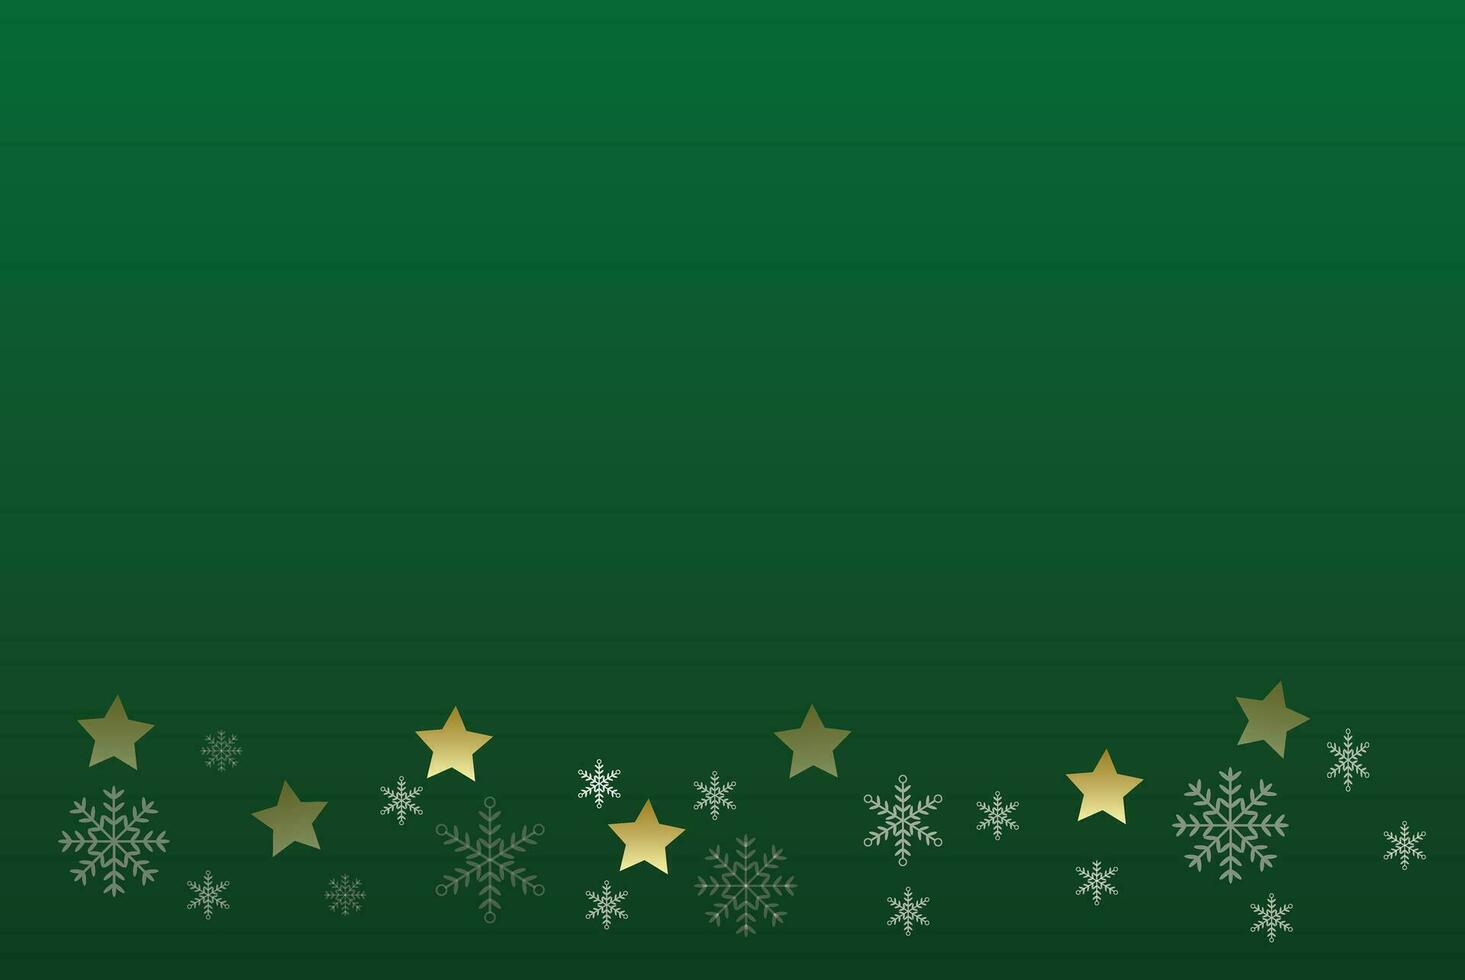 Navidad y contento nuevo año con Navidad copos de nieve en verde fondo, vector ilustración.